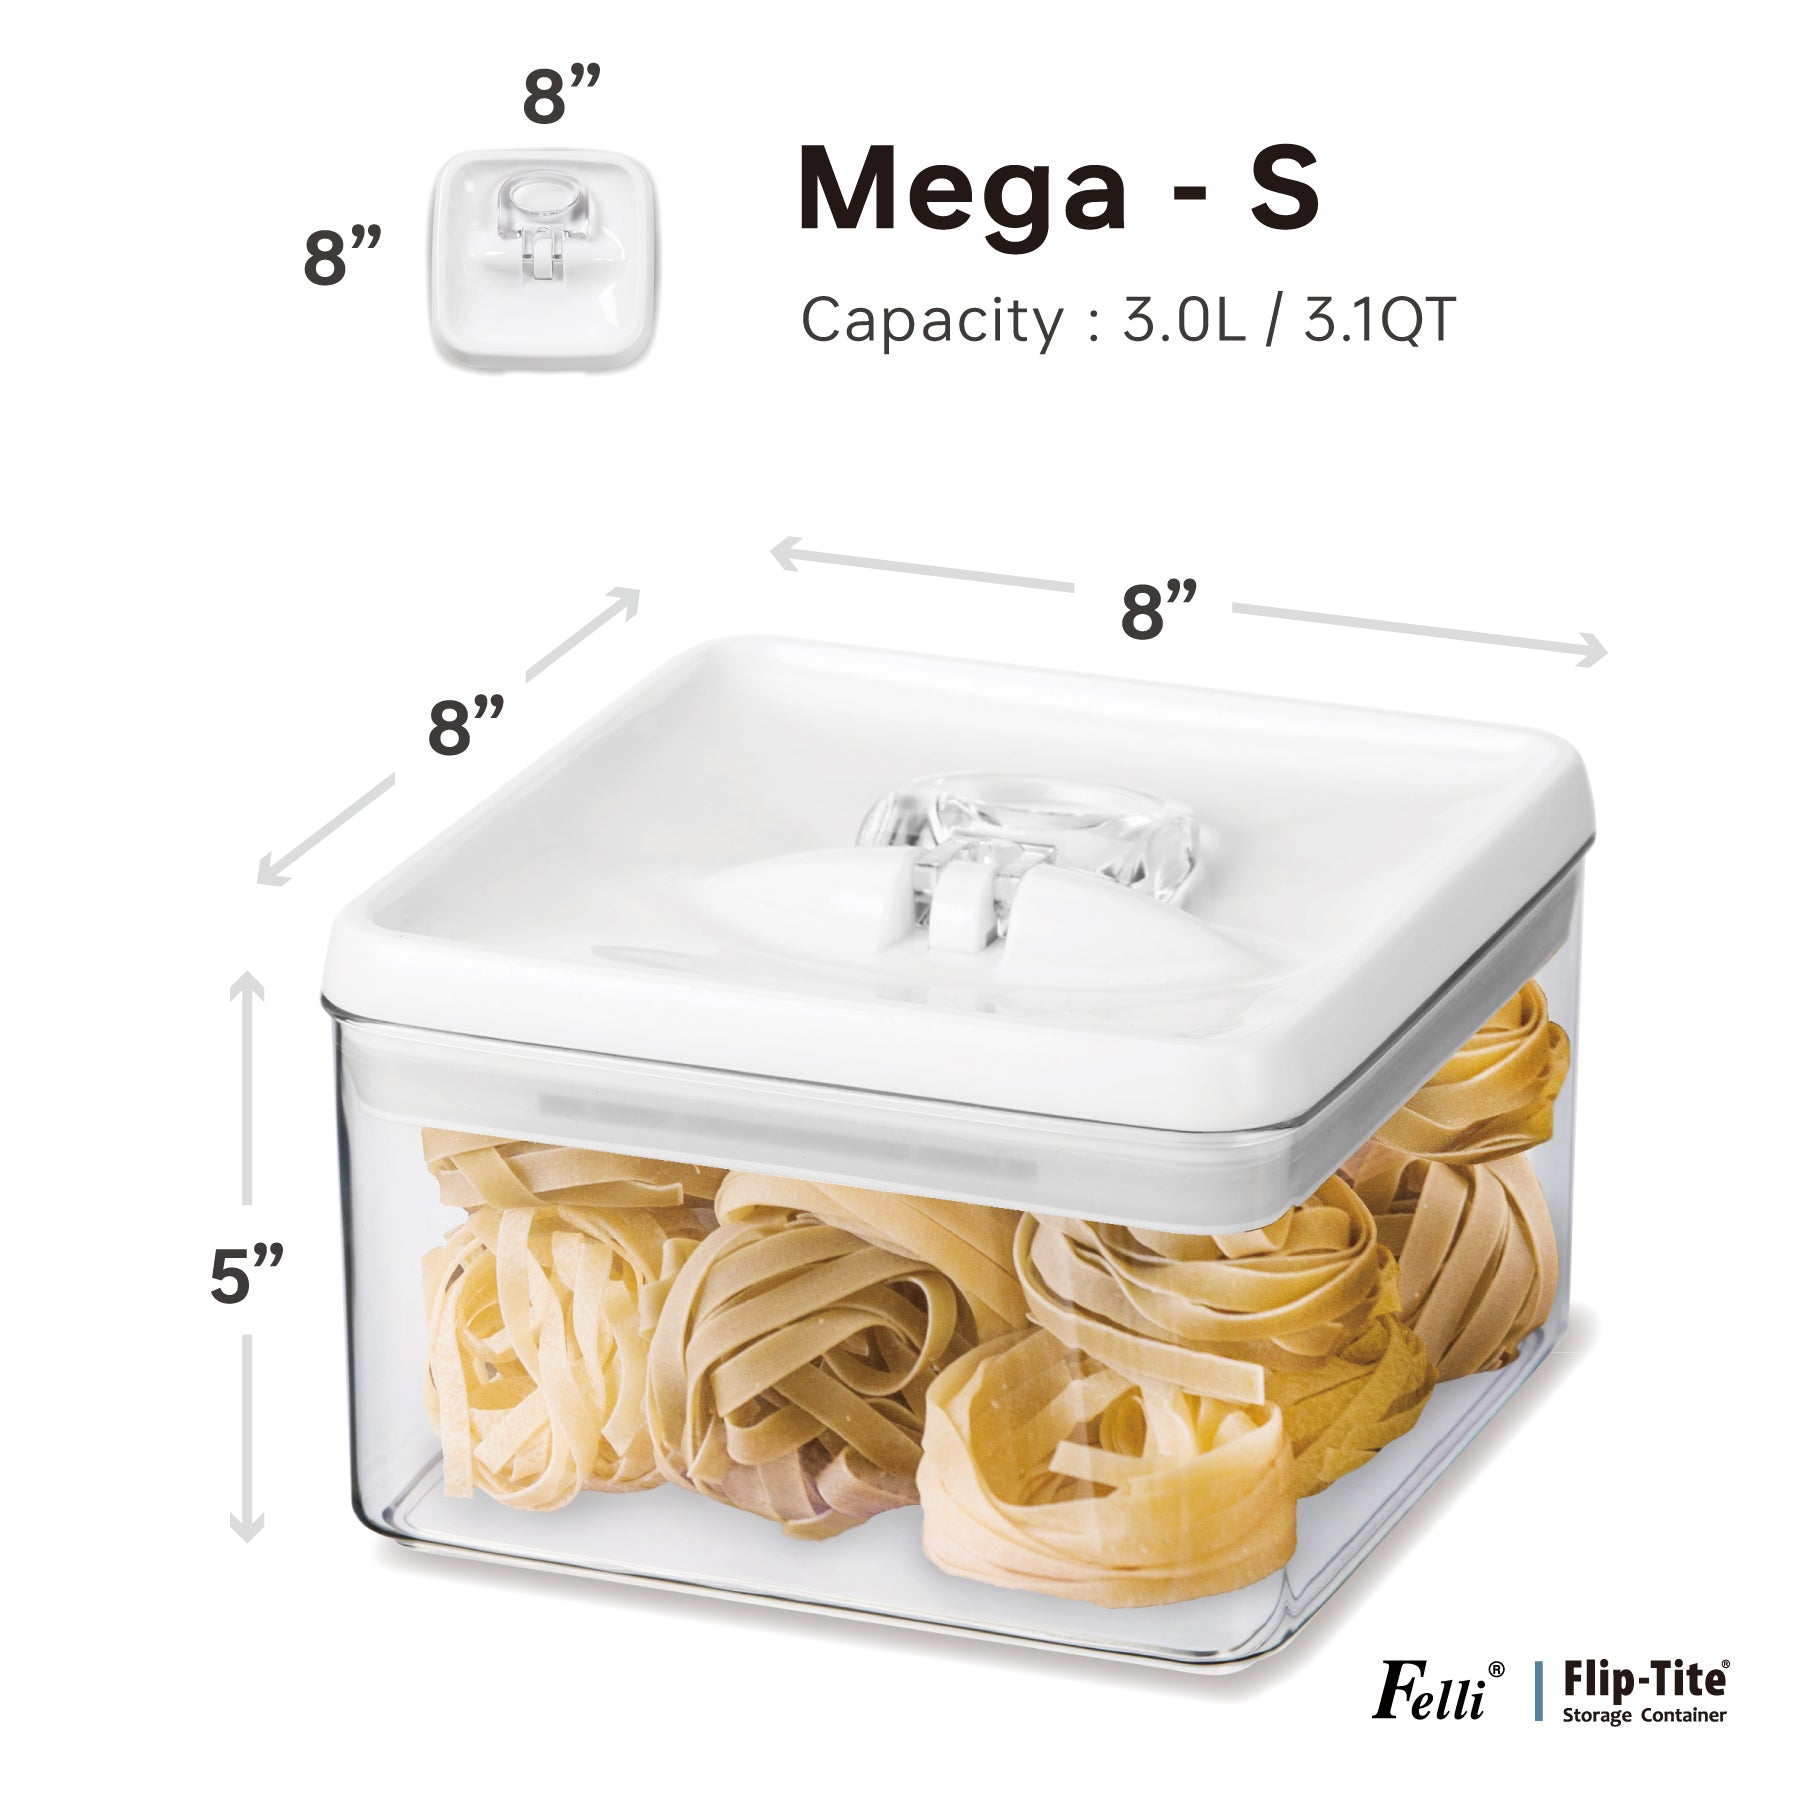 Flip-Tite Mega-S 3.1QT / 3L - Felli Official